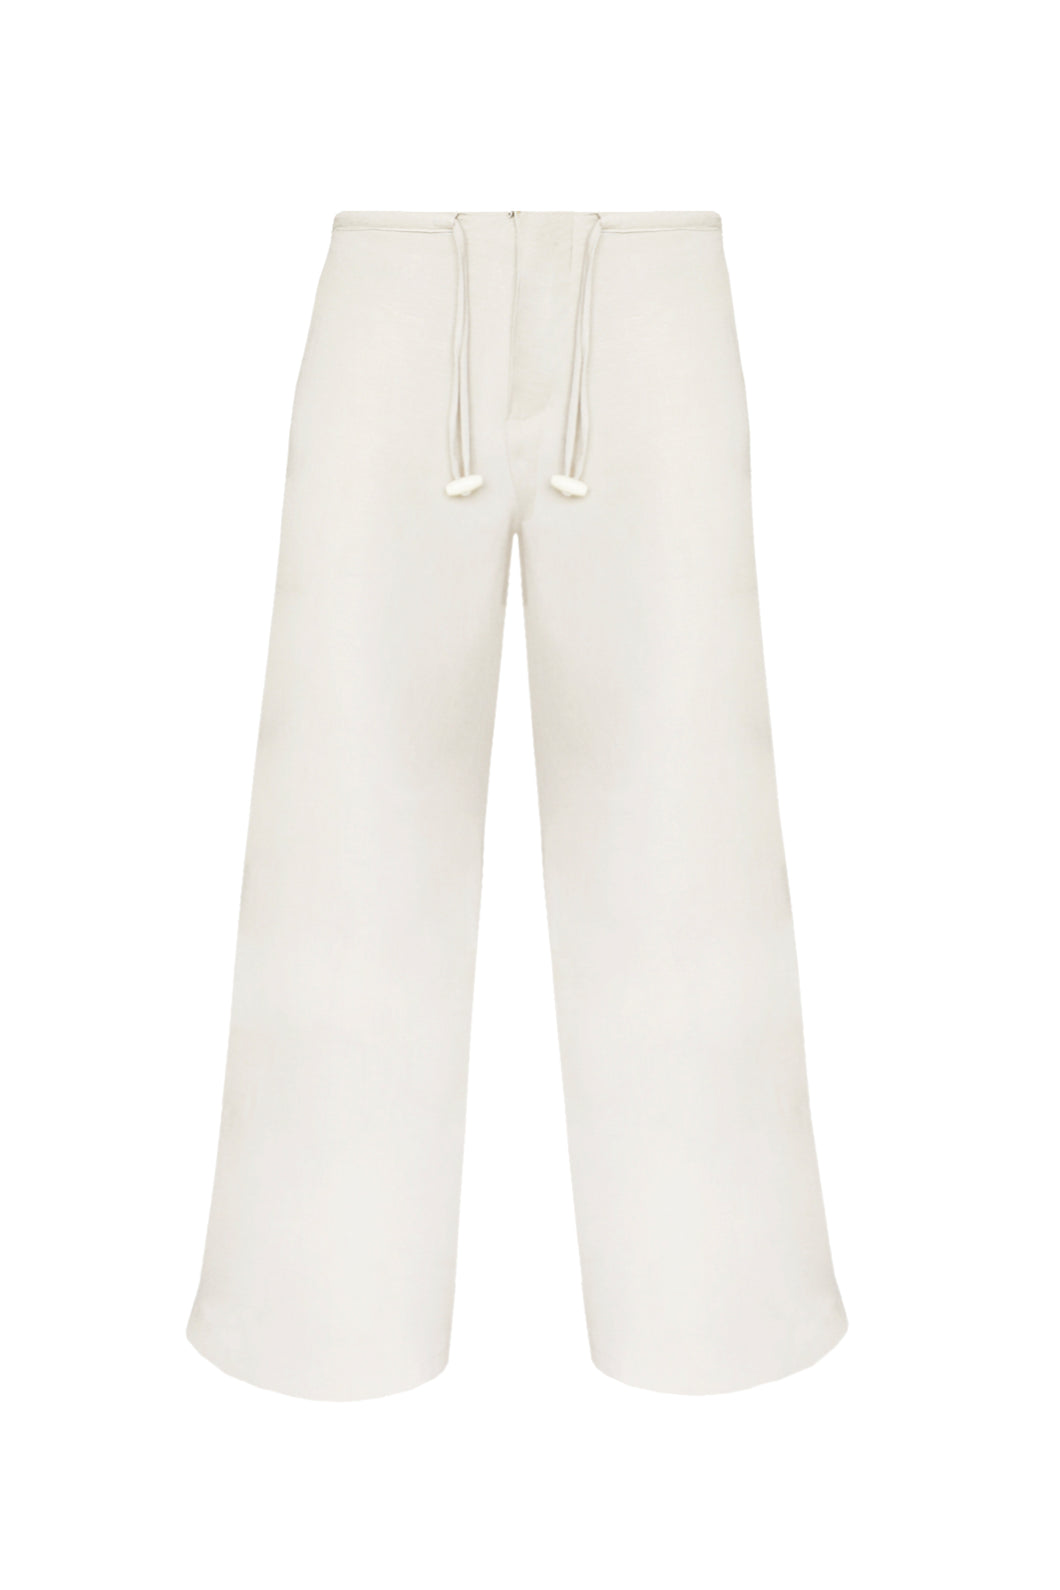 Pantalona Detalhe Viés - Off-White